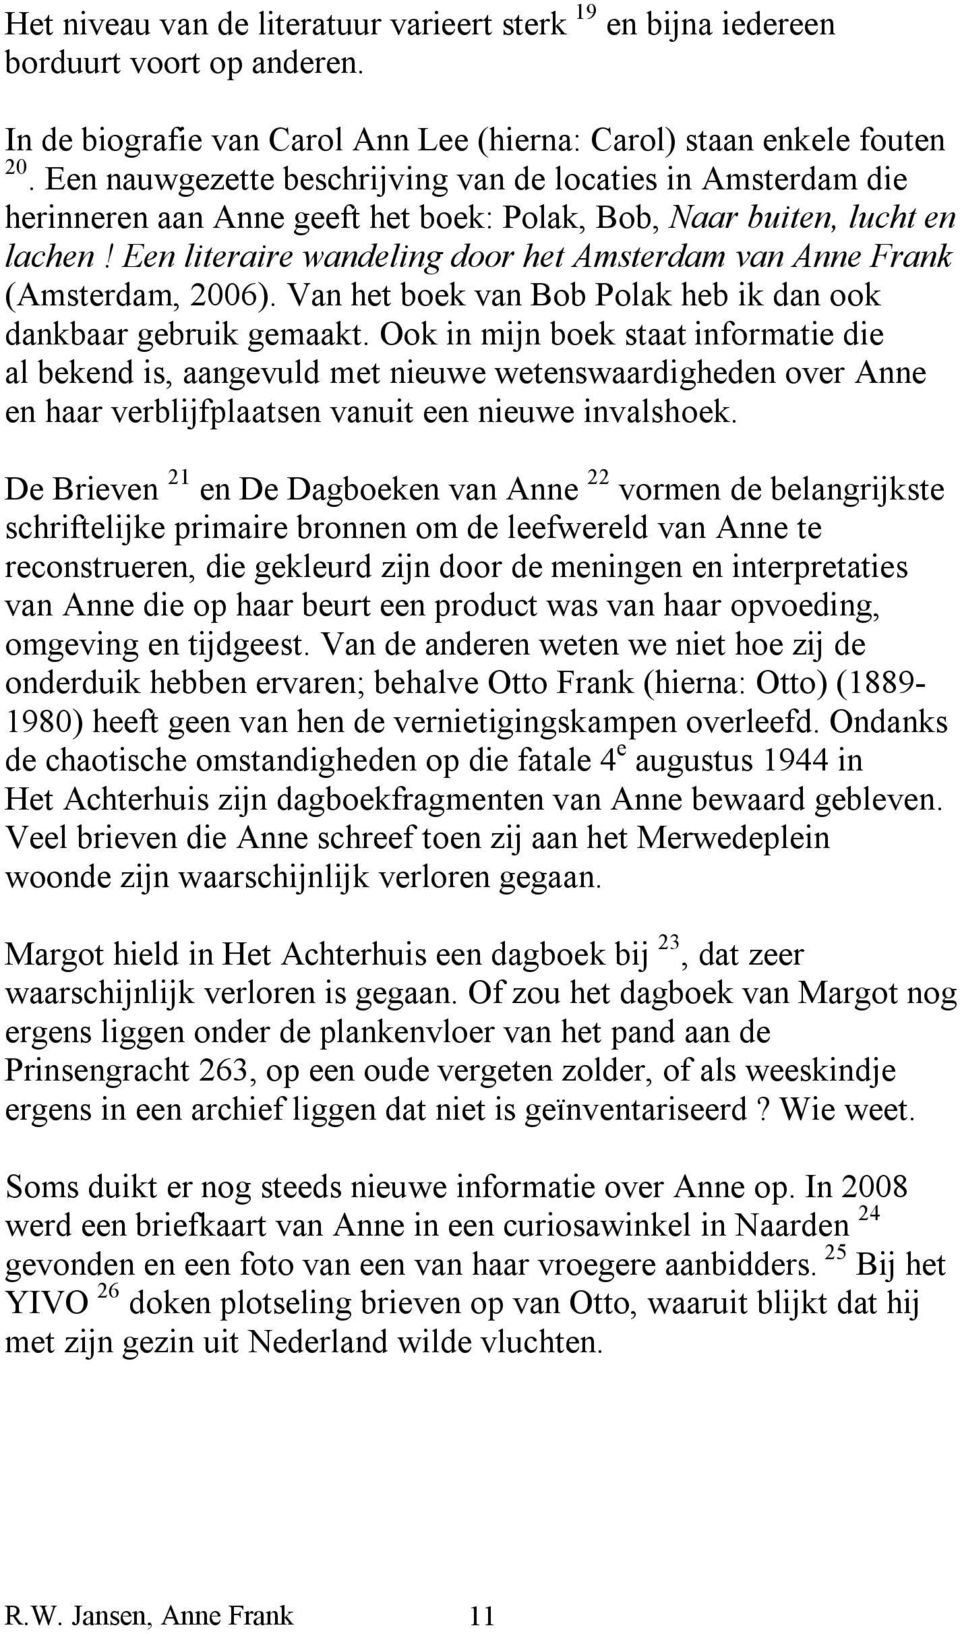 Een literaire wandeling door het Amsterdam van Anne Frank (Amsterdam, 2006). Van het boek van Bob Polak heb ik dan ook dankbaar gebruik gemaakt.